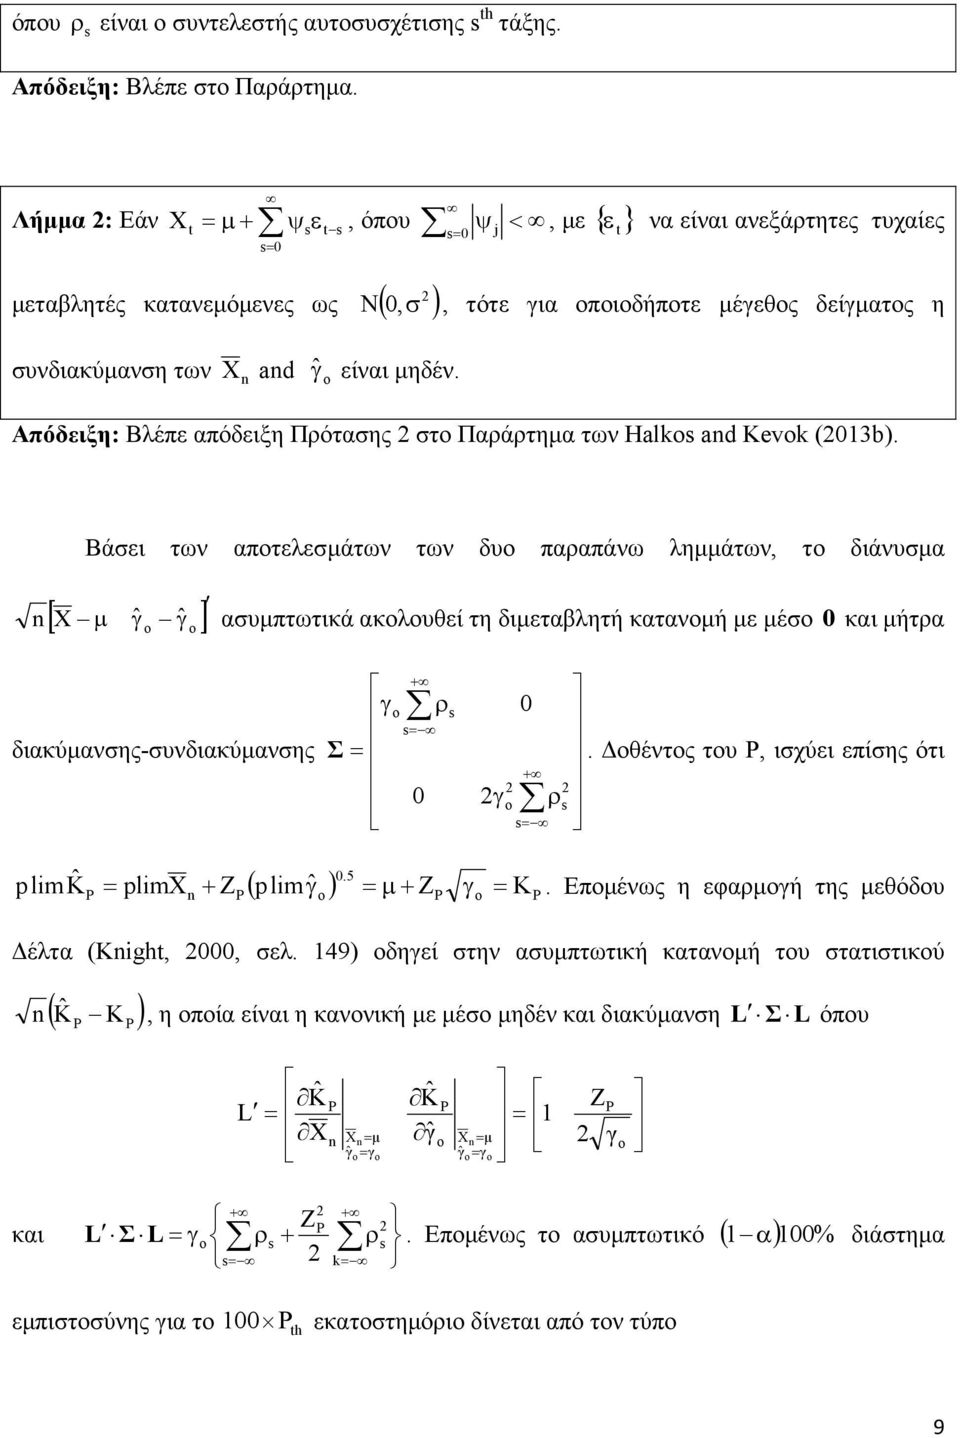 Απόδειξη: Βλέπε απόδειξη Πρότασης στο Παράρτηµα των Halk and Kevk (03b).